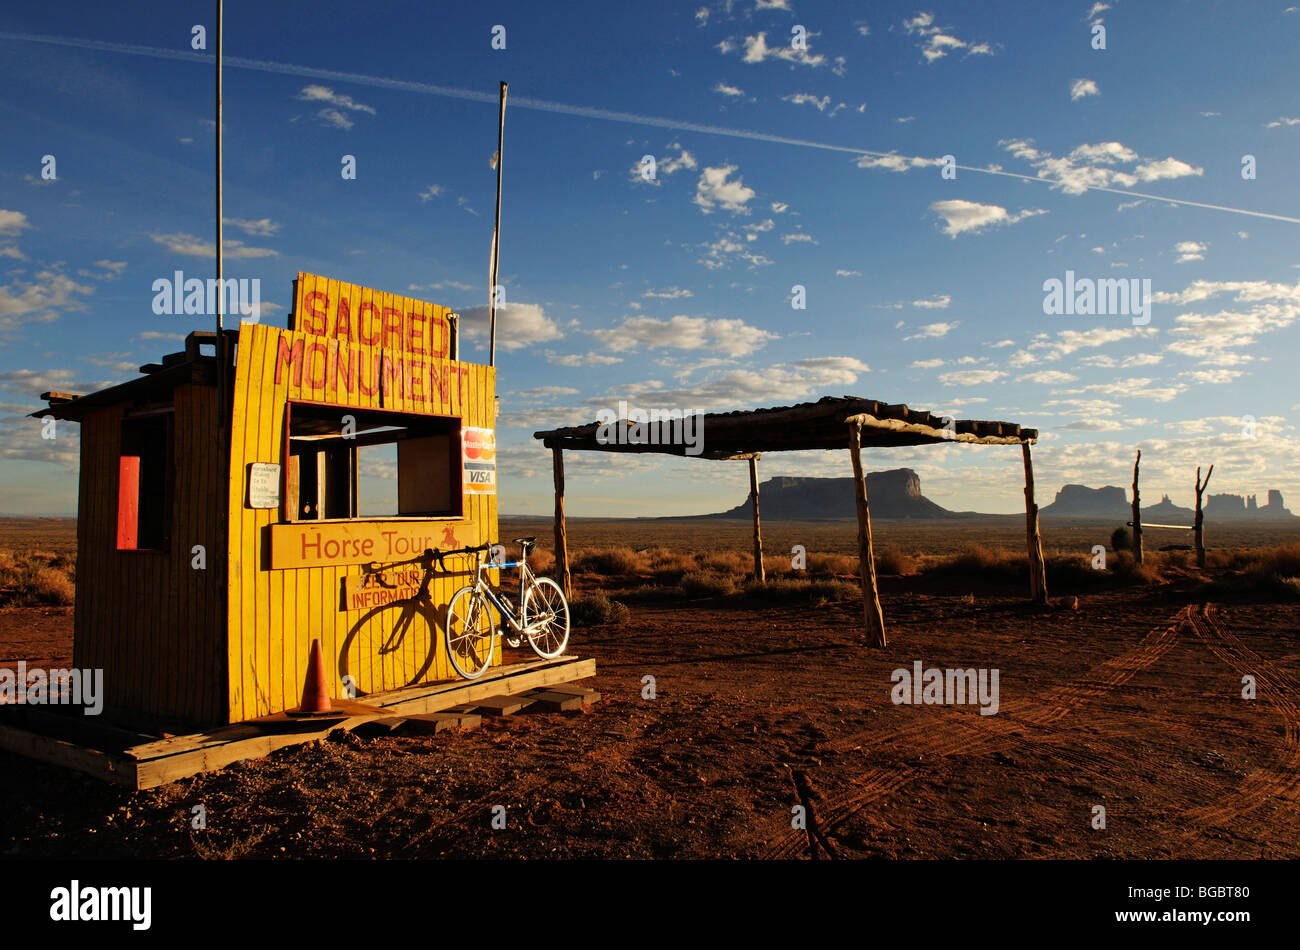 Racing bike, Monument Valley, Navajo Tribal Lands, Utah Stock Photo